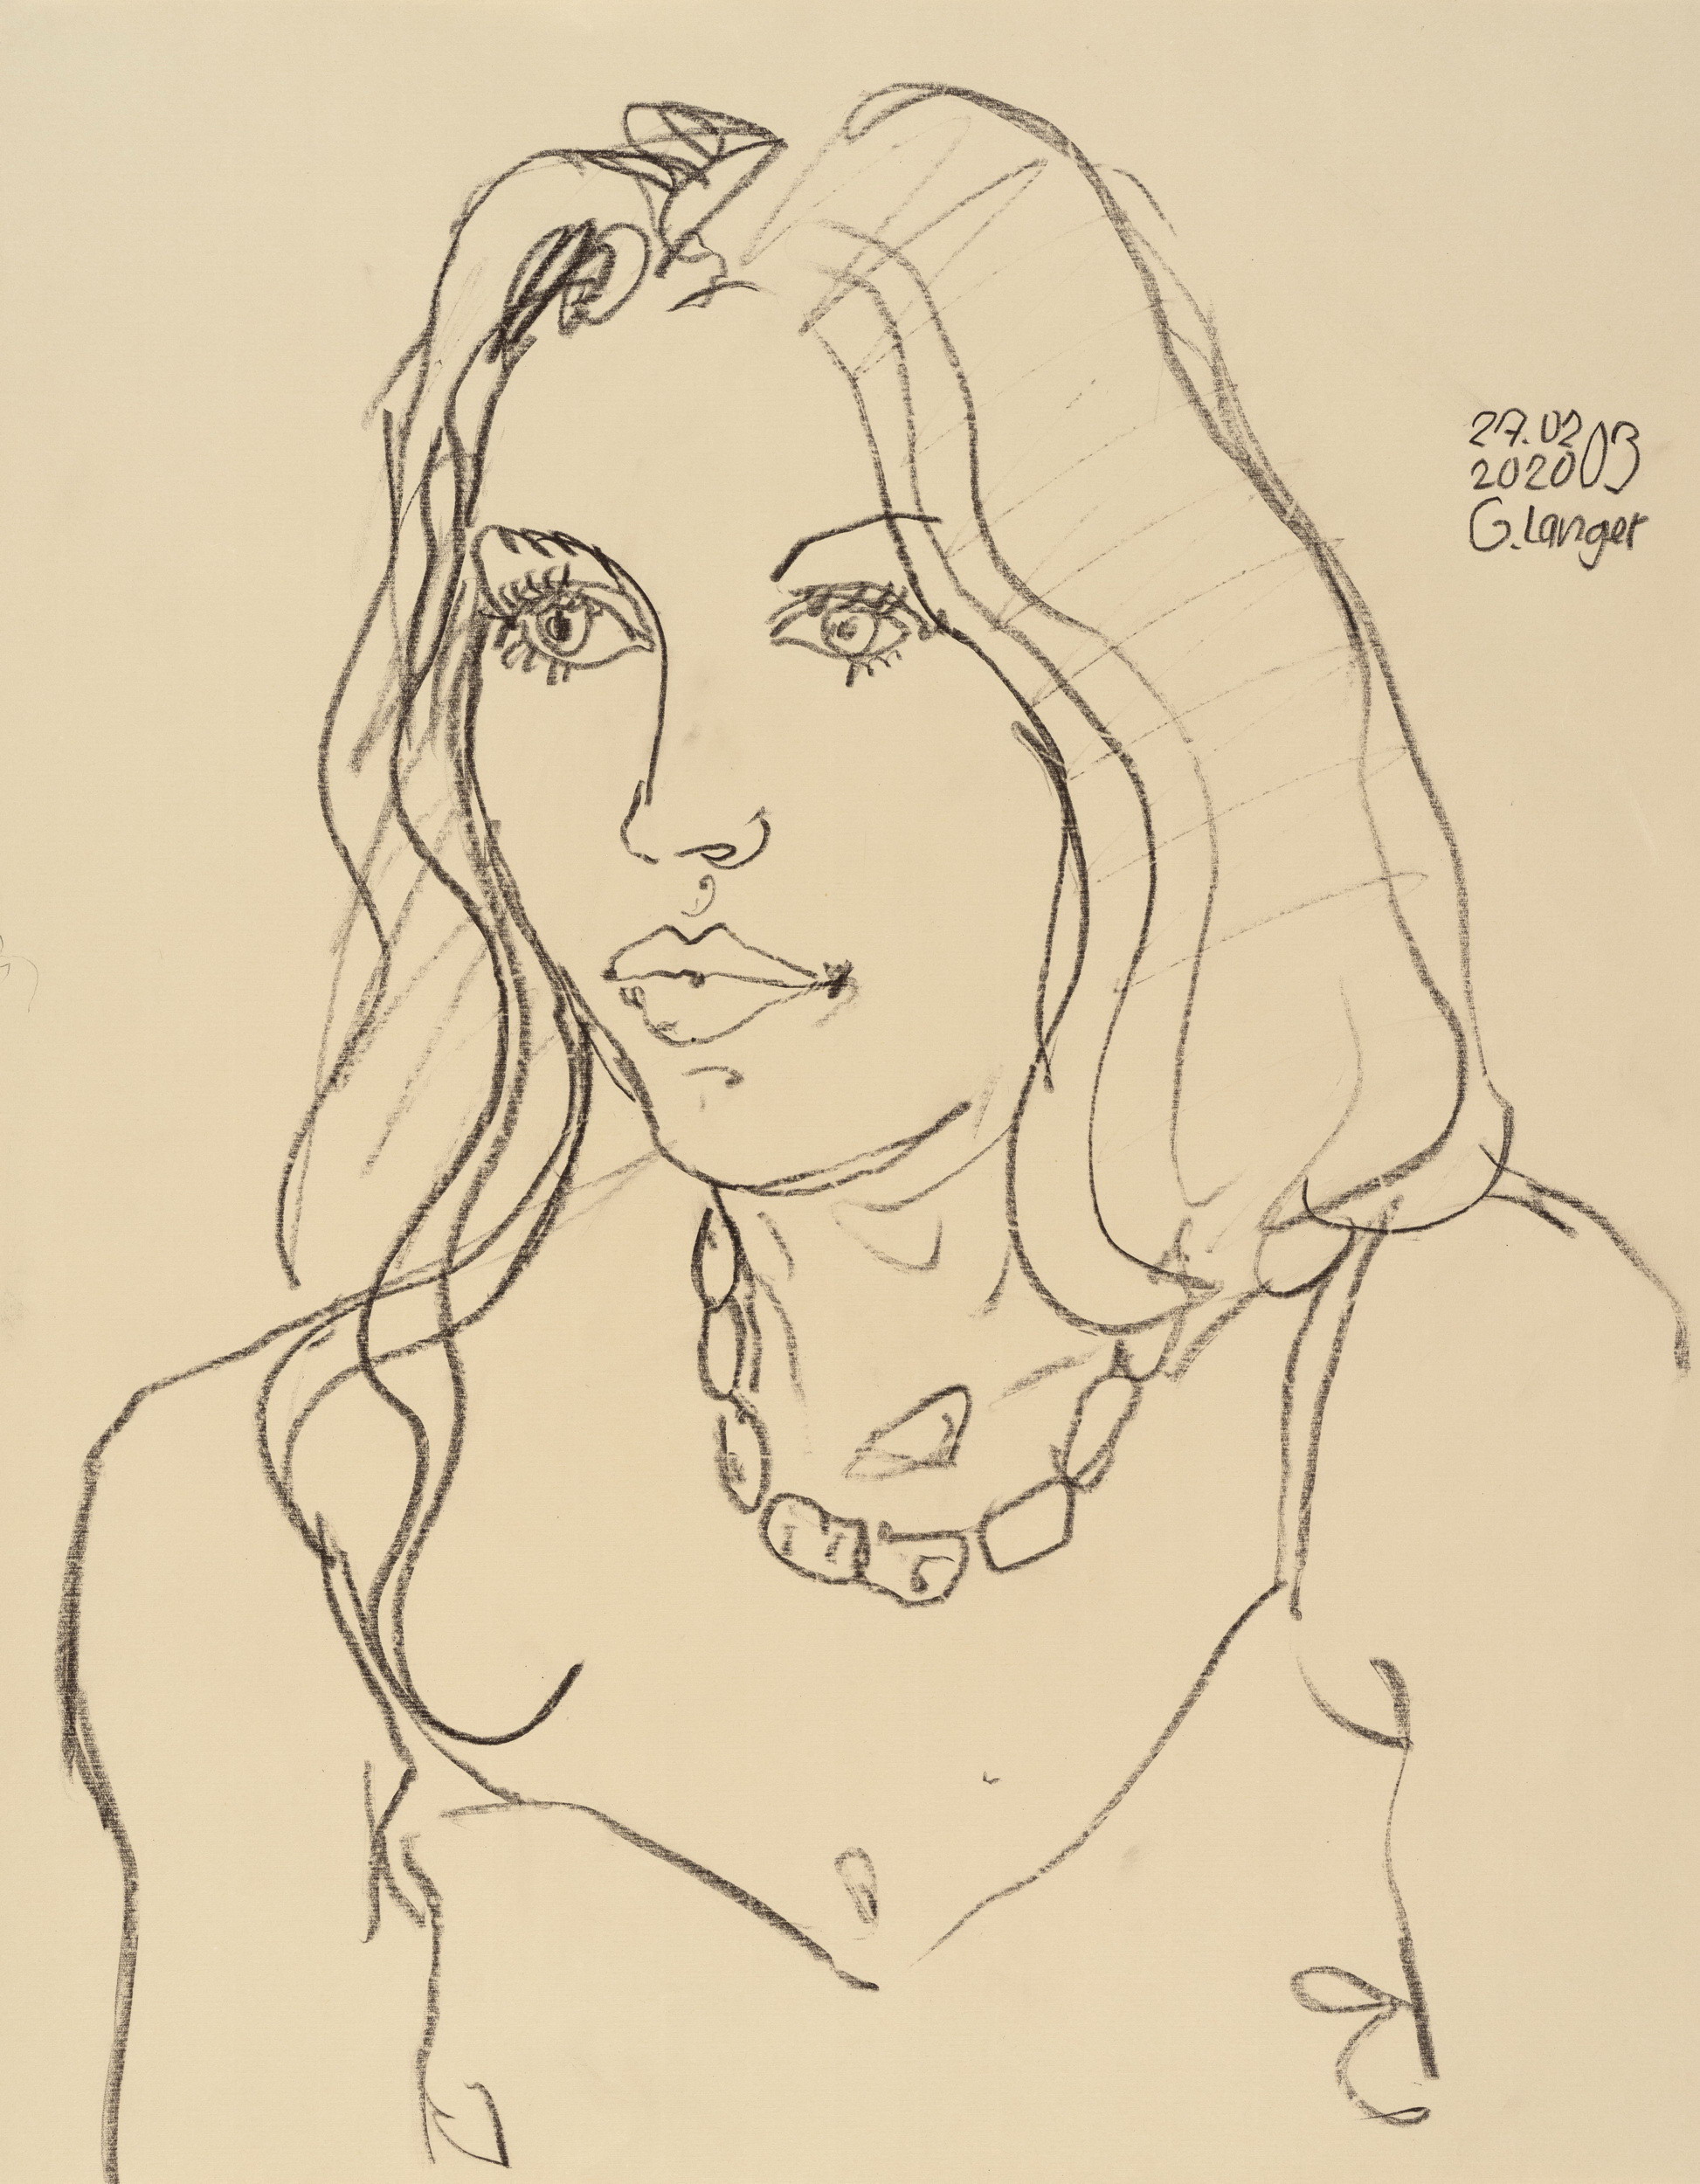 Gunter Langer, Portrait einer jungen Frau, 2020, Zeichenpapier, 63 x 49 cm